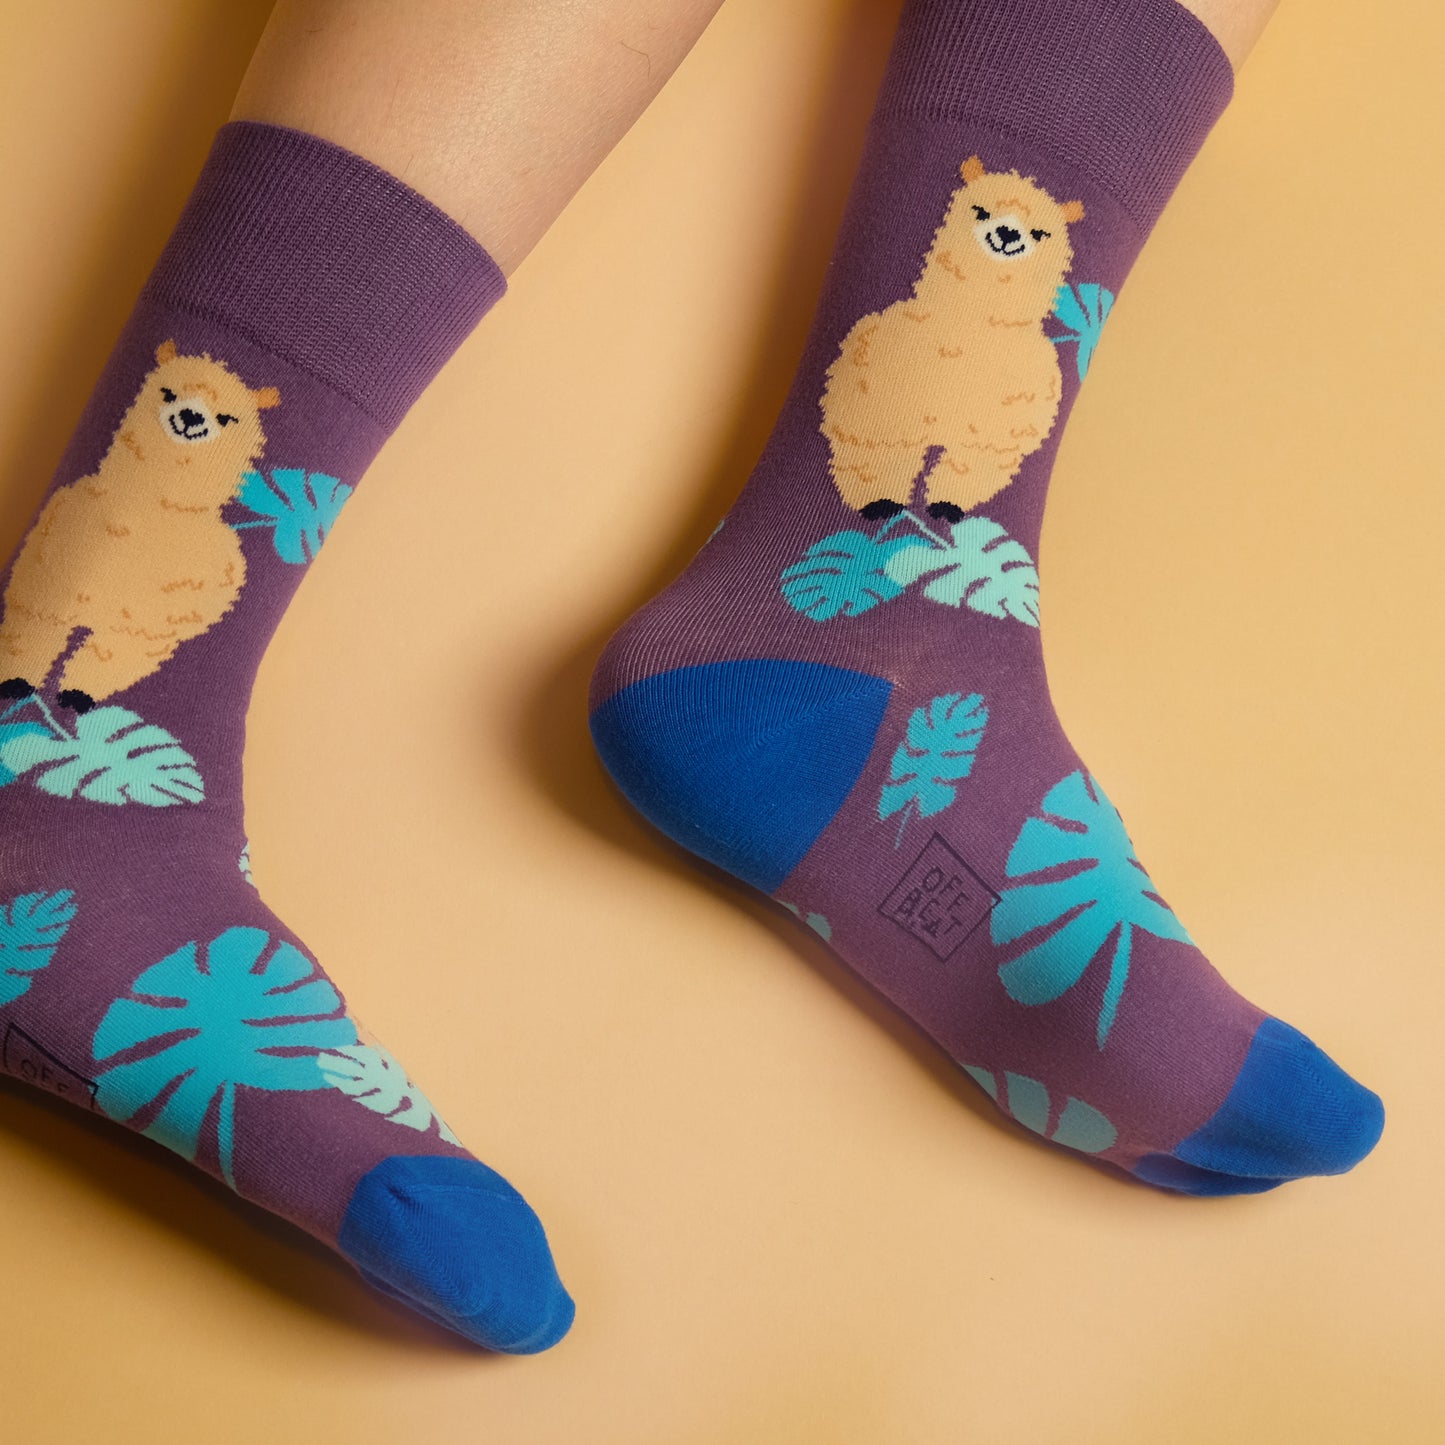 Llama socks